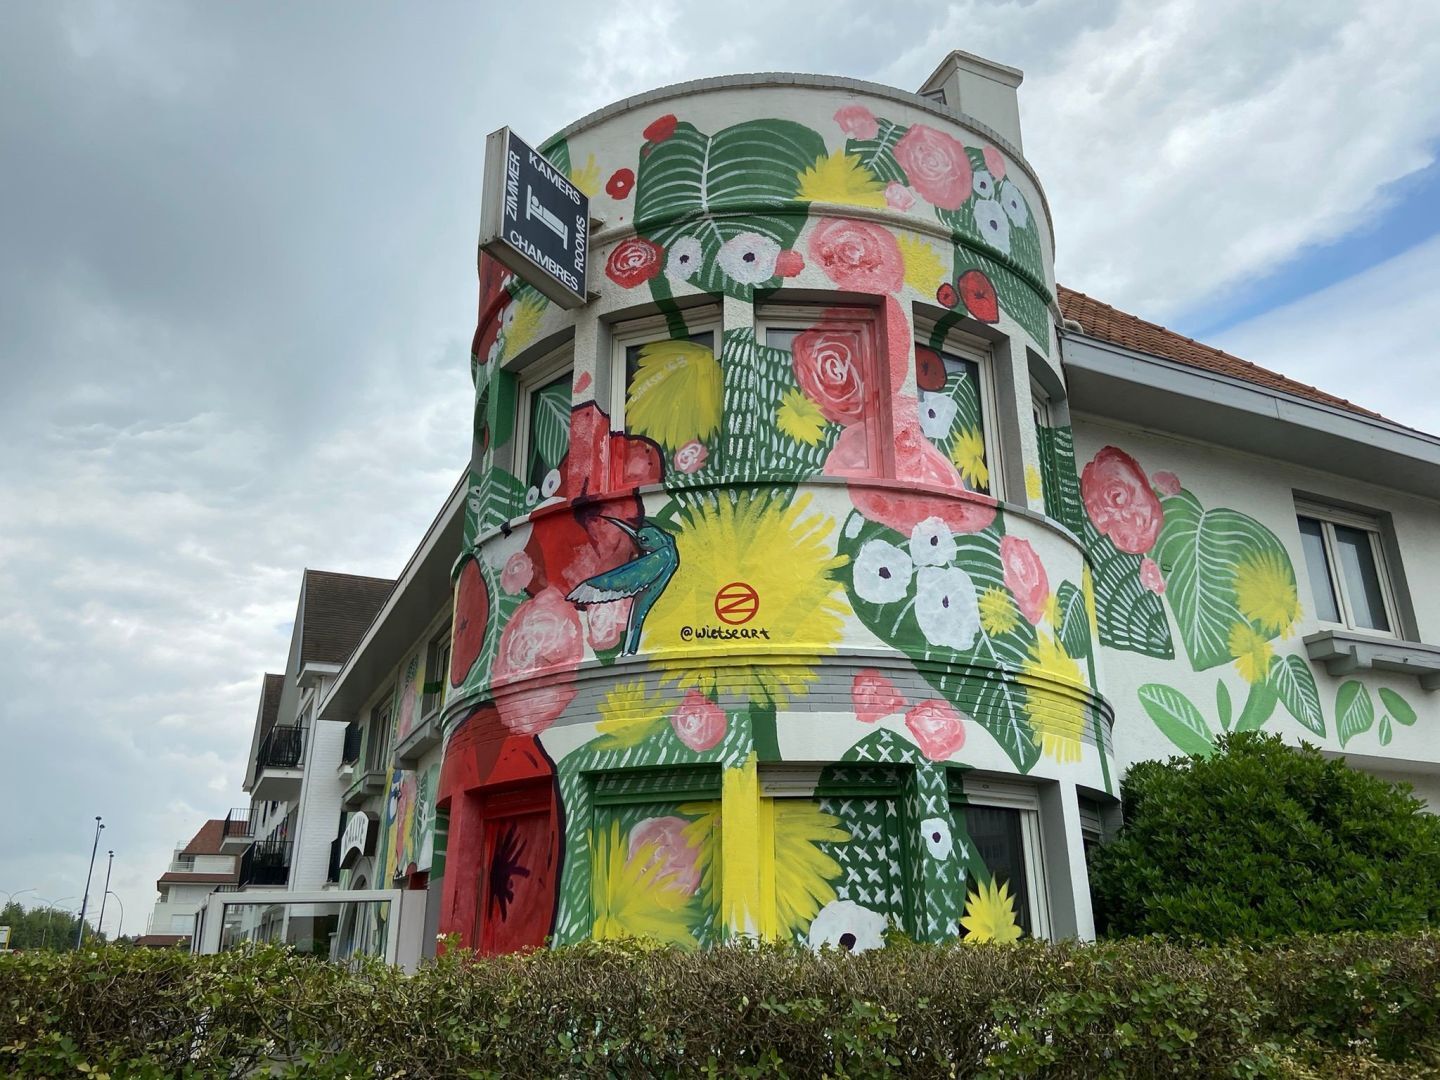 Kunstenaar Wietse schildert enorme mural op voormalig hotel voor het gesloopt wordt